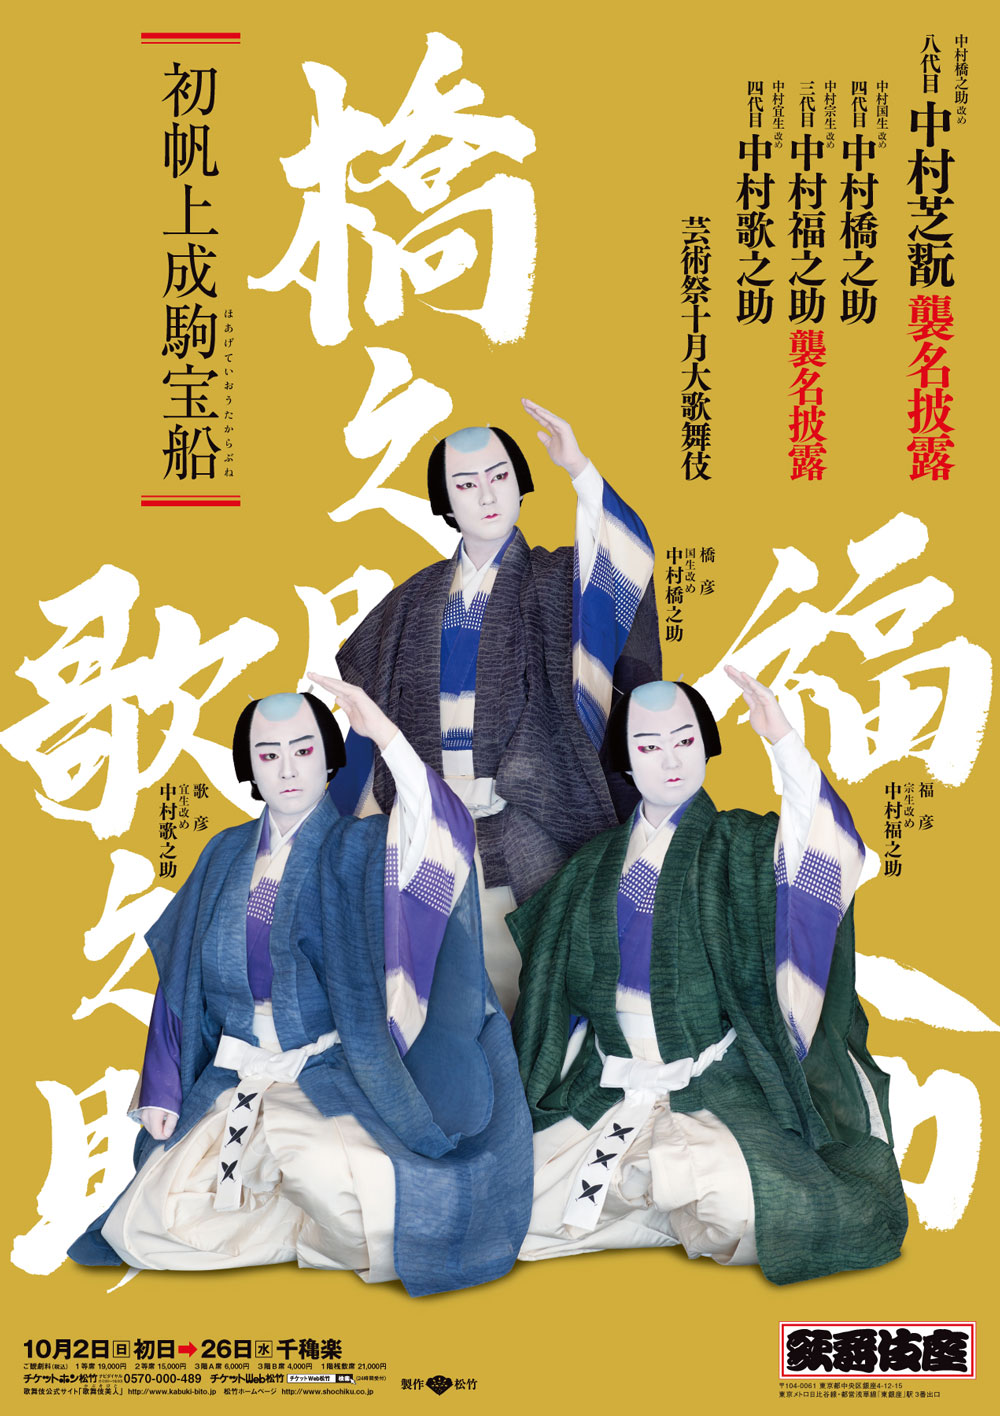 歌舞伎座「芸術祭十月大歌舞伎」特別ポスター公開